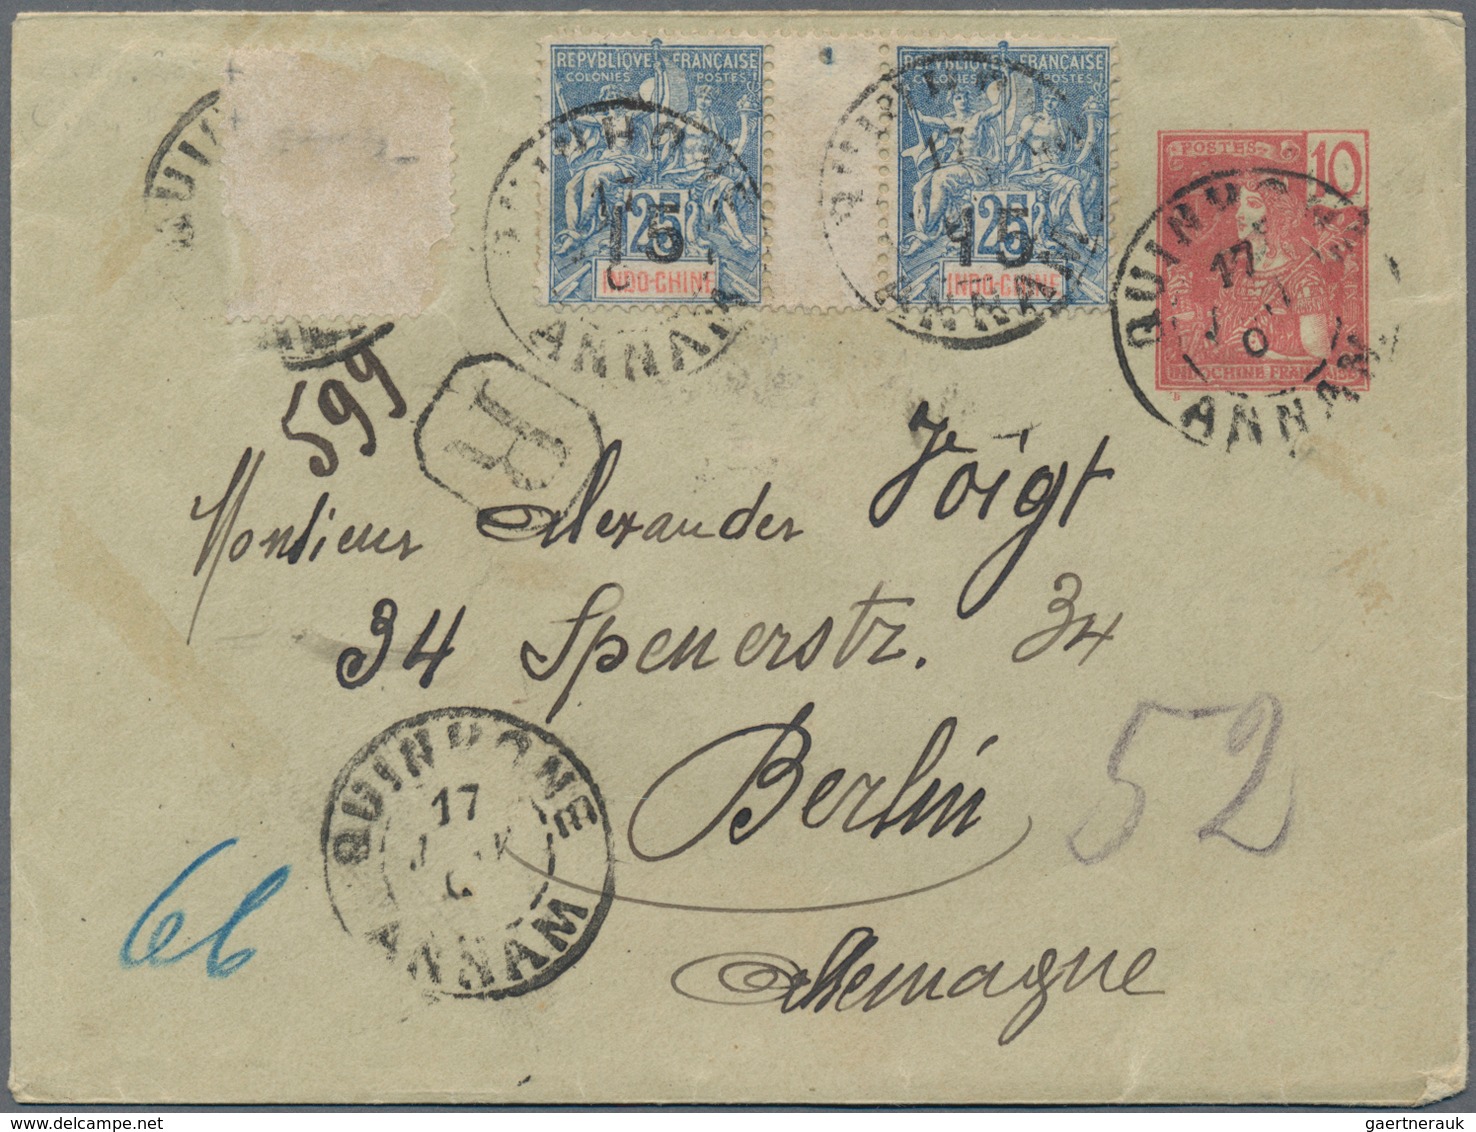 Französisch-Indochina: 1900/49 (ca.), lot covers/ppc (31) a.o. 1917 MM "Porthos" ppc to Macau, 1940